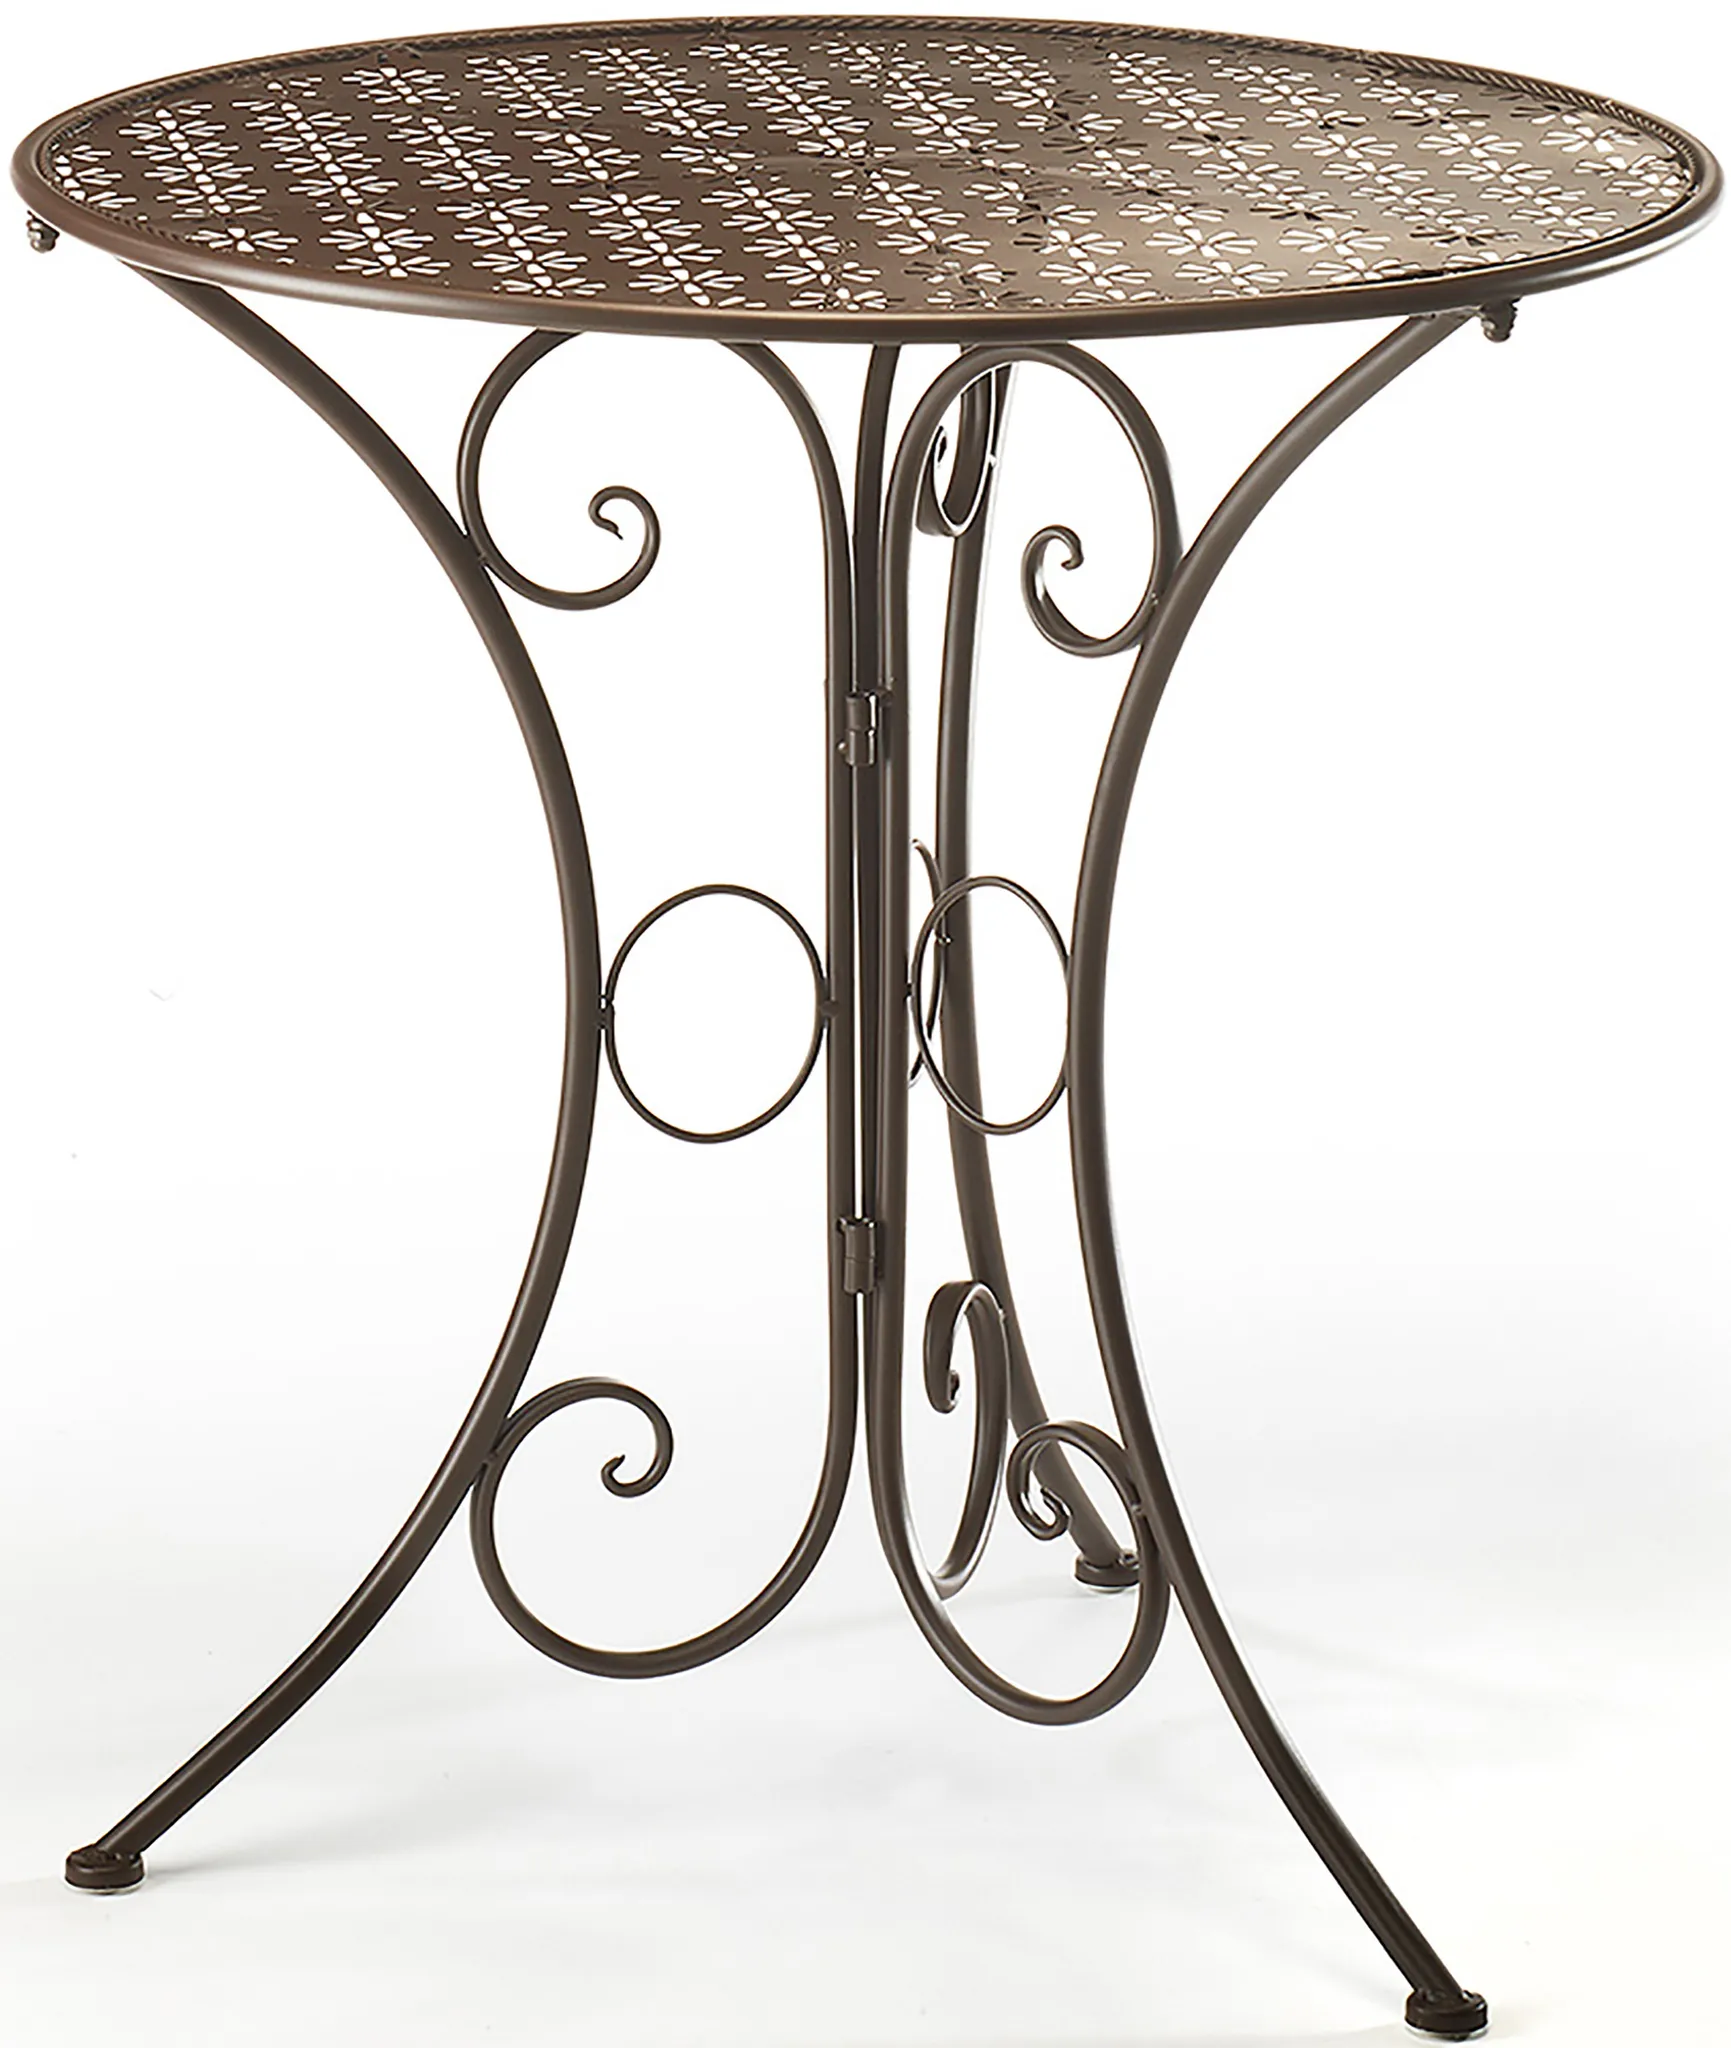 60cm Tisch aus Metall braun Gartentisch